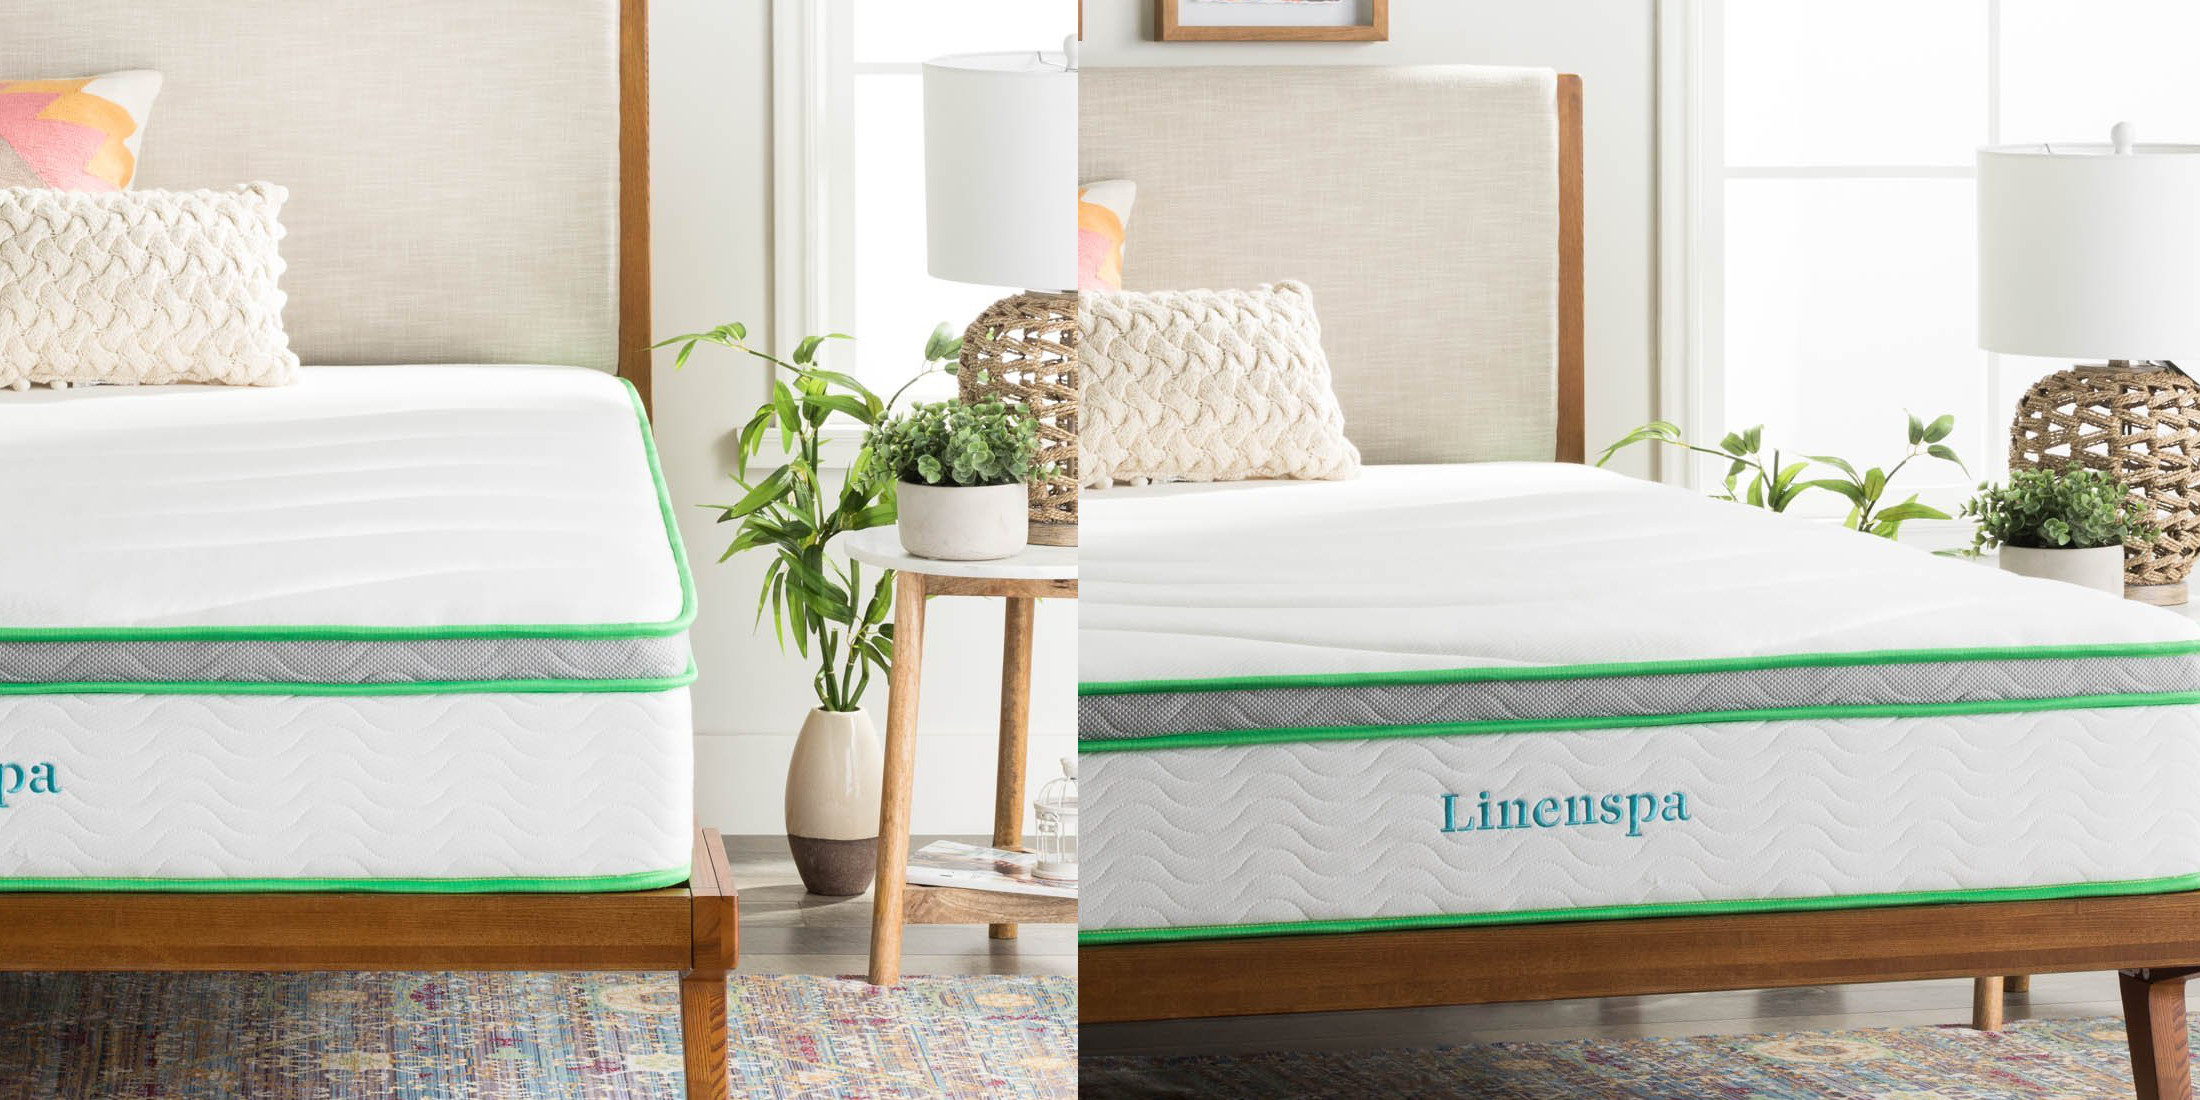 linenspa 10 inch queen mattress